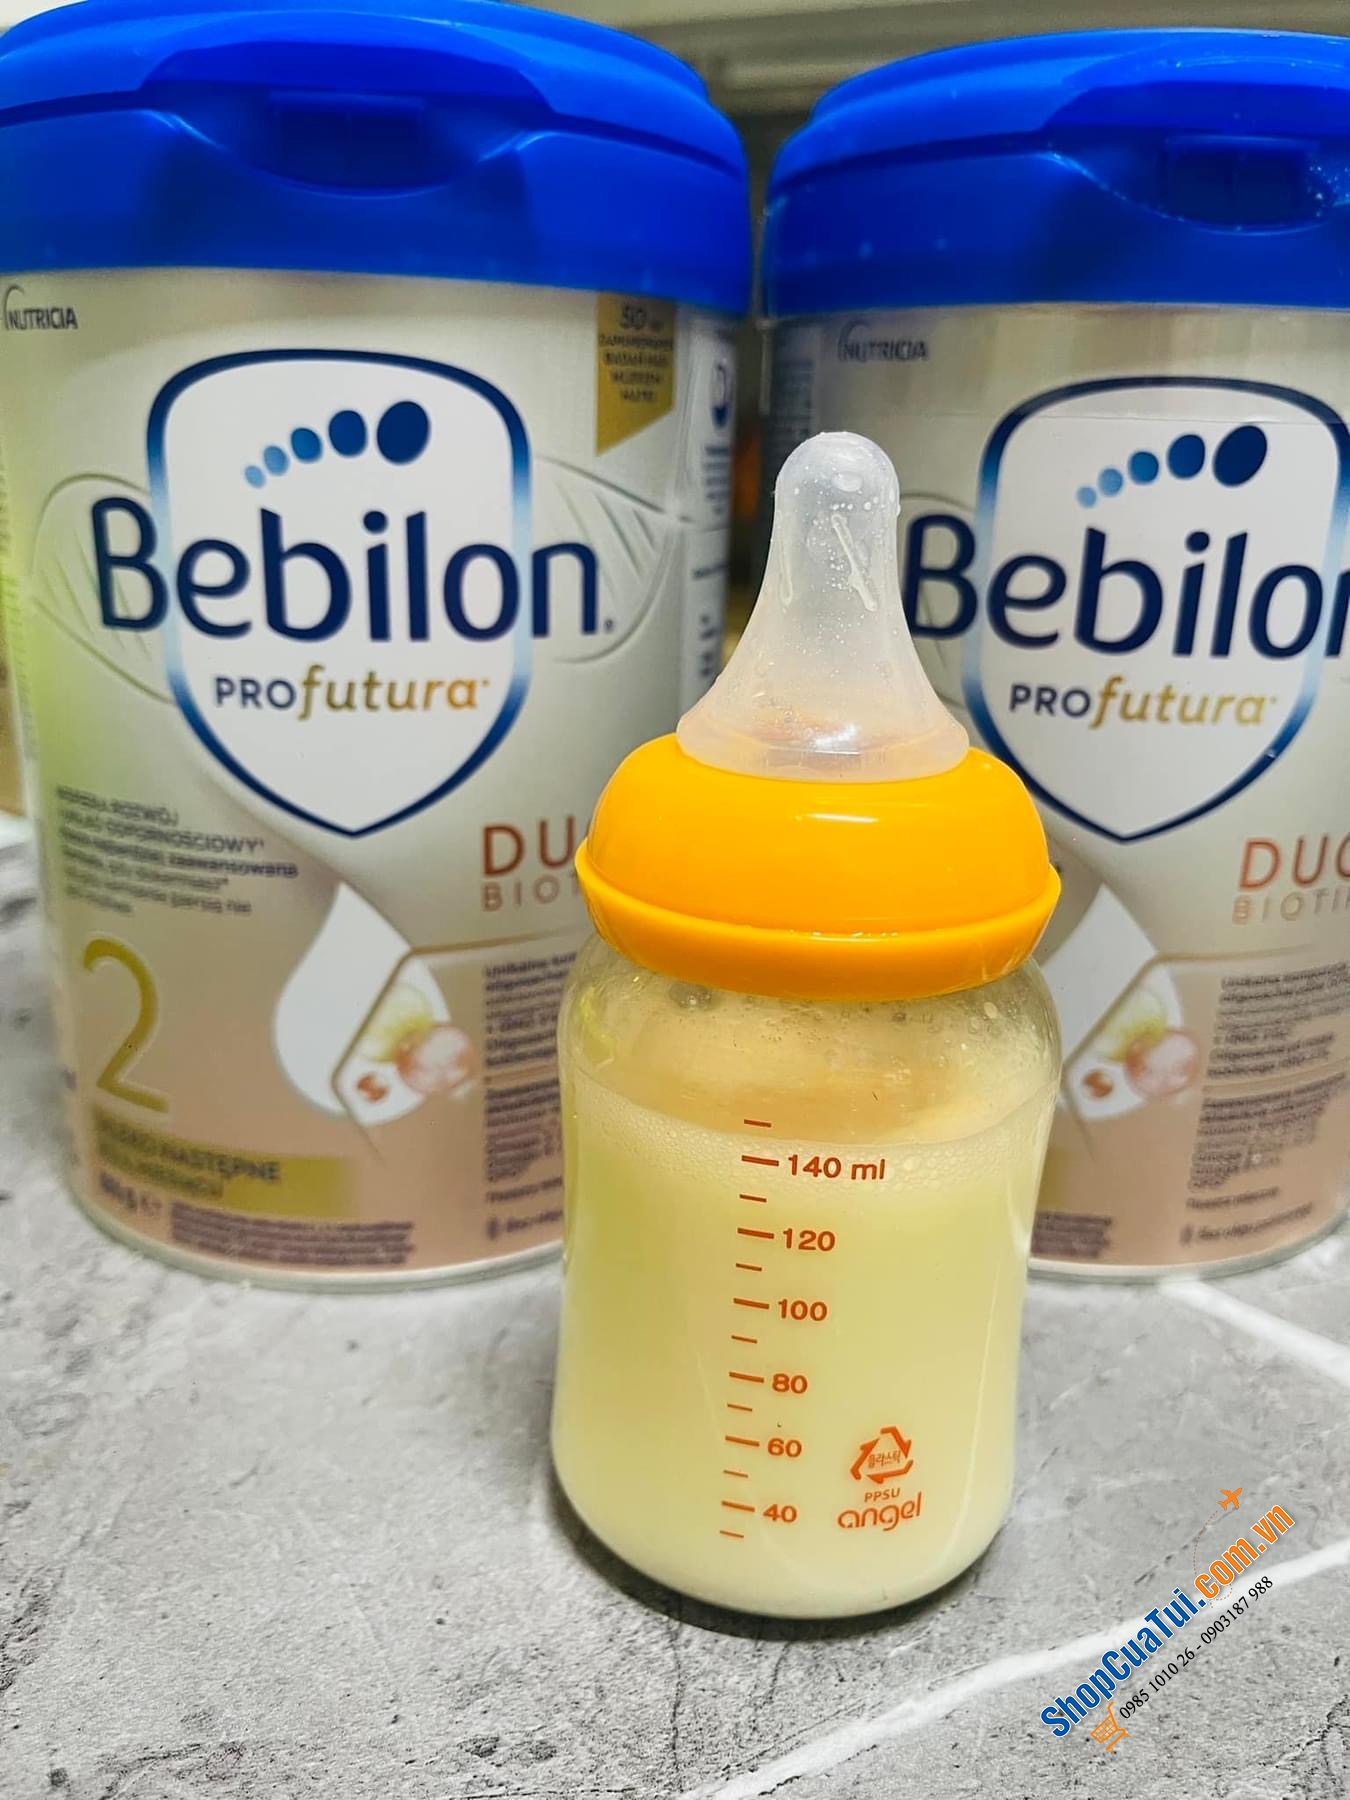 Sữa Bebilon Profutura đủ số - dòng sữa cao cấp cho bé, đạt tiêu chuẩn chung của Châu Âu